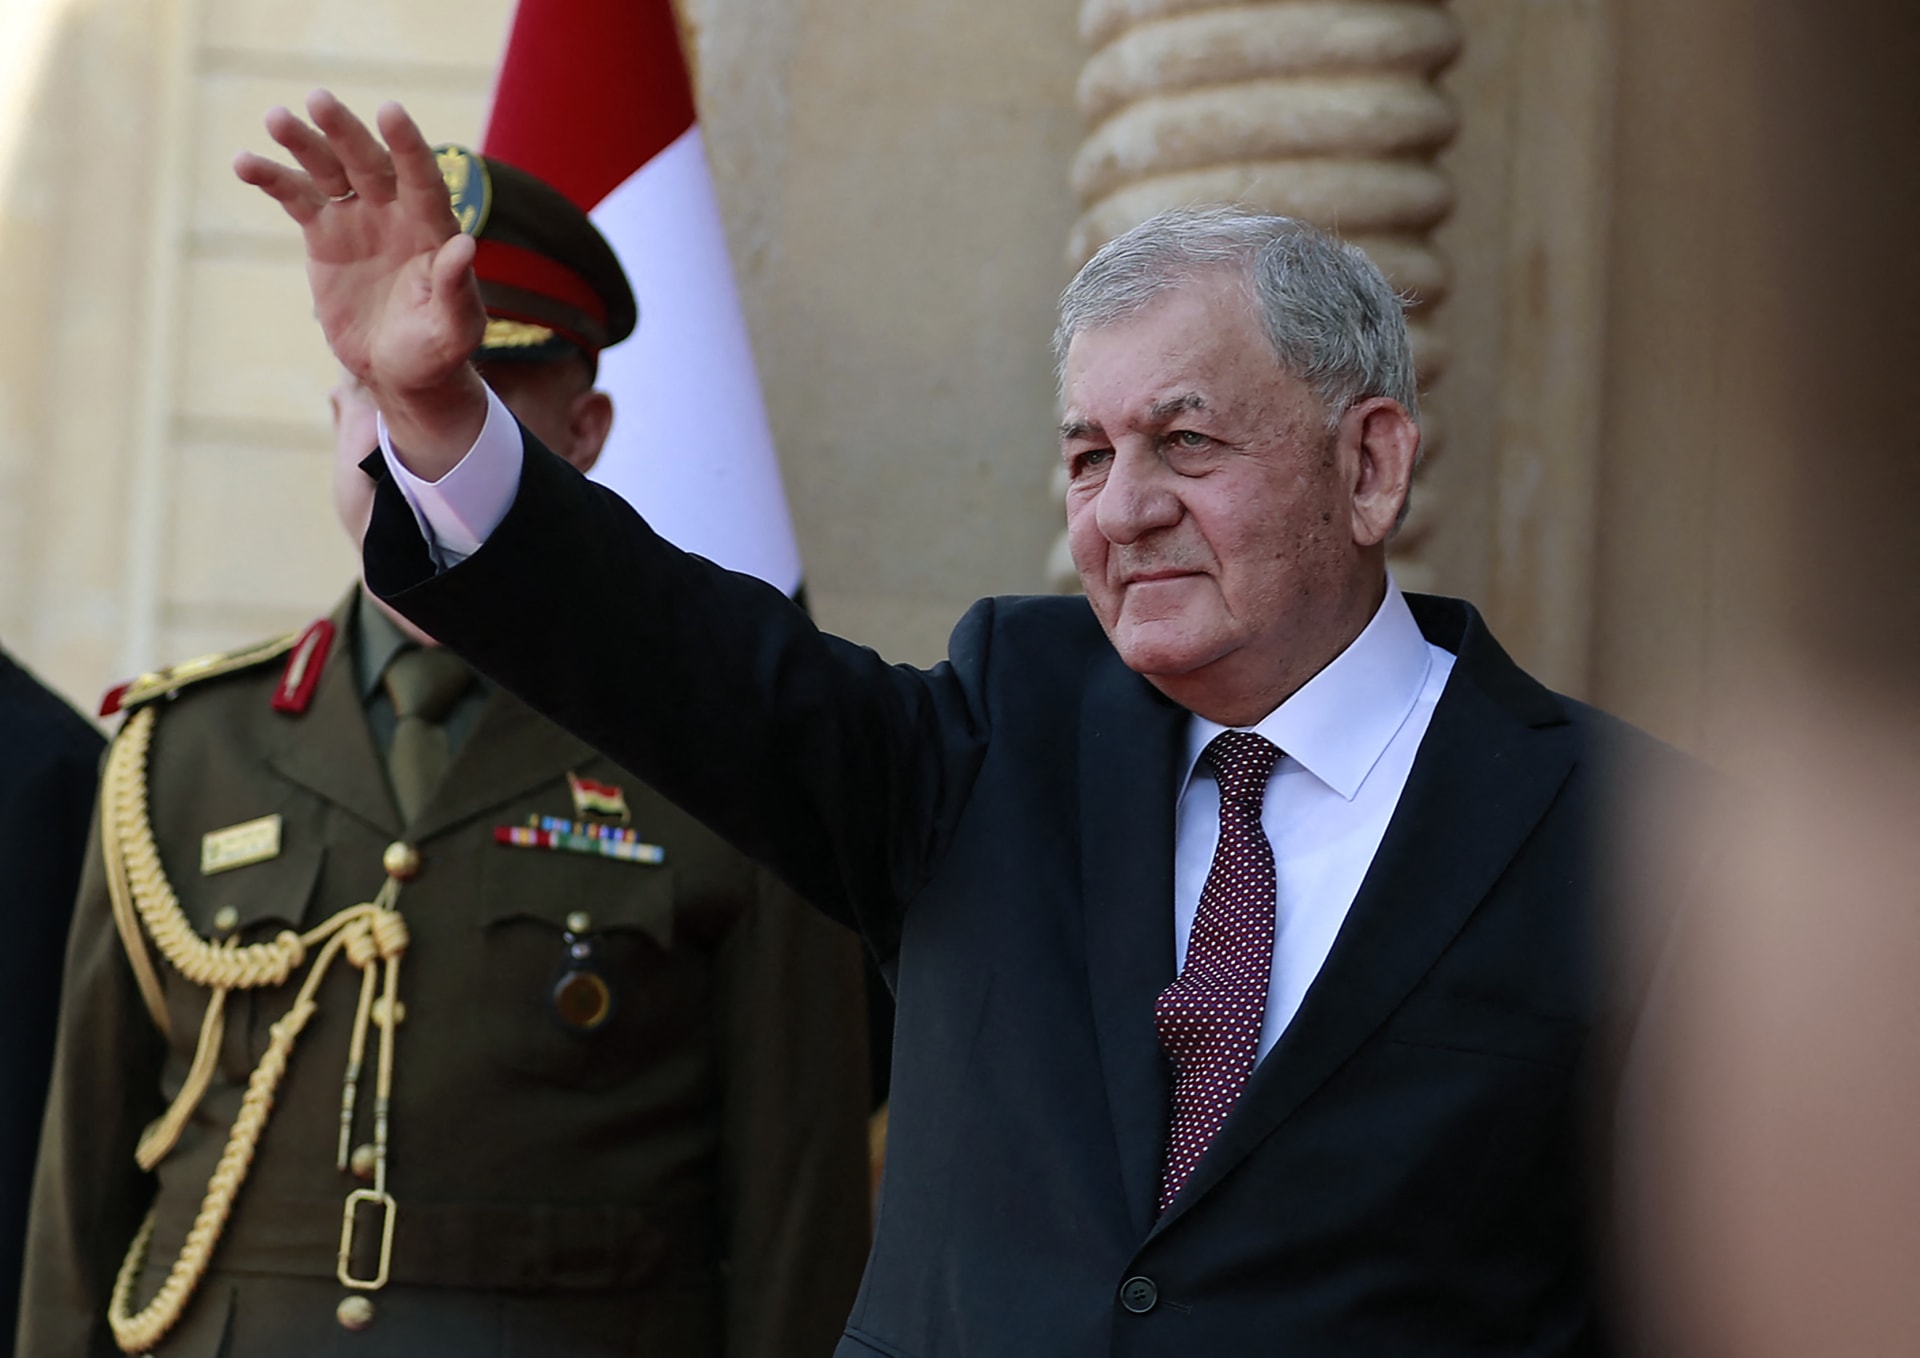 رئيس العراق يؤكد رفض بلاده لـ"الخروقات التركية" لأراضيها